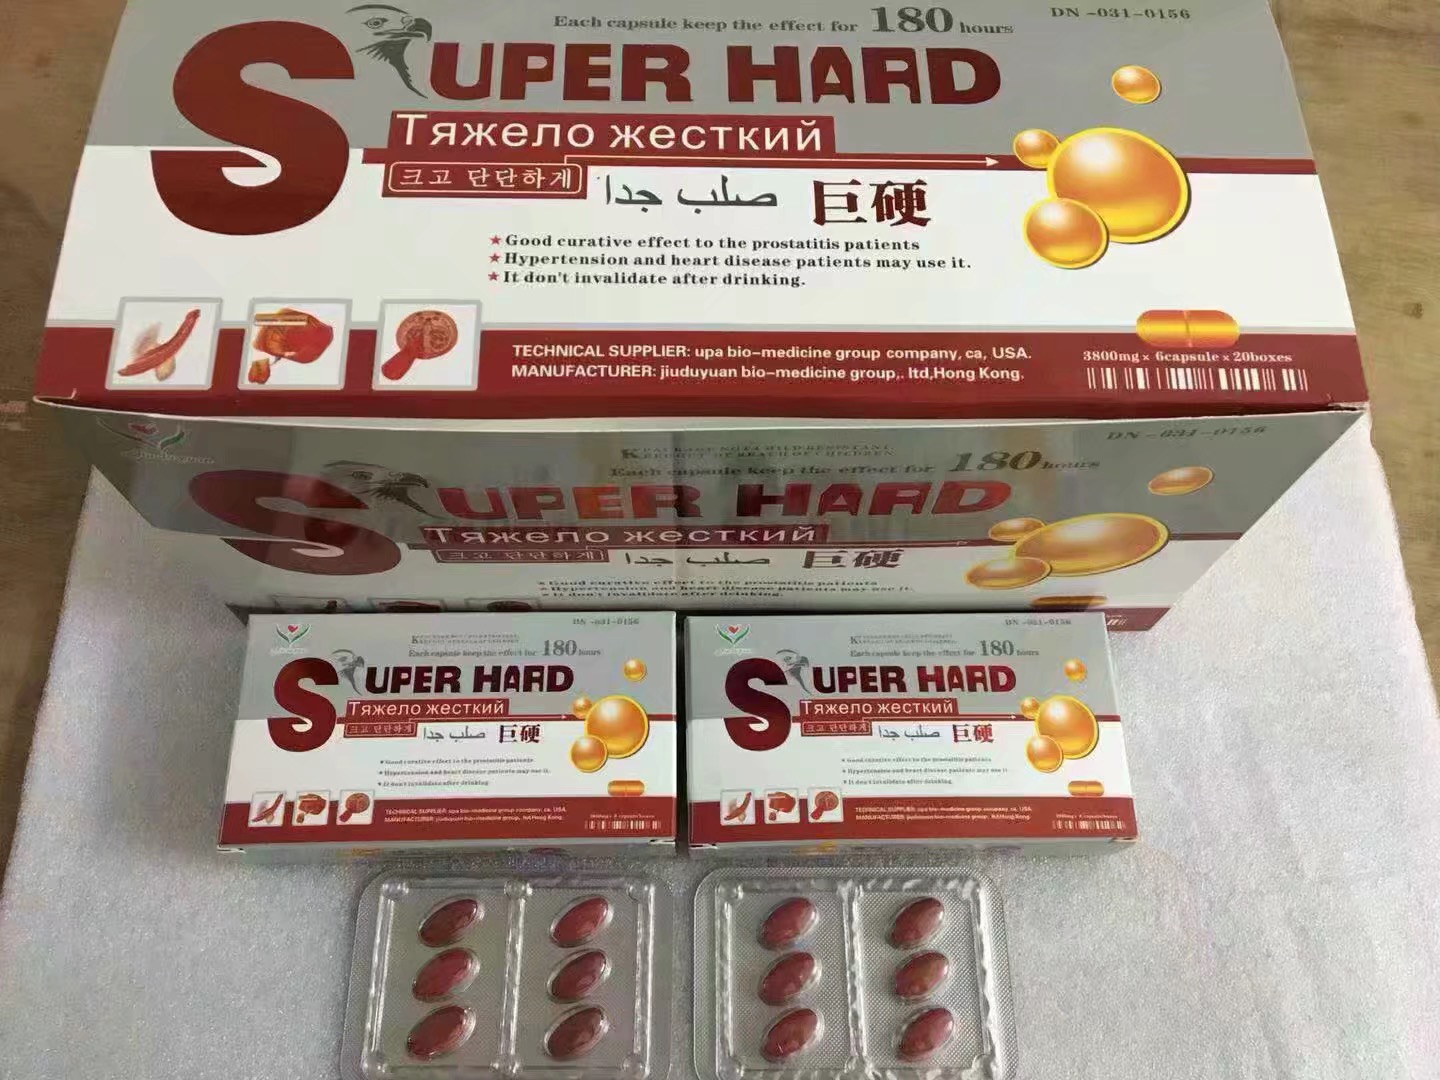 Super Hard 6800 Mg 6 Pills Male Enhancement Sex Medicine